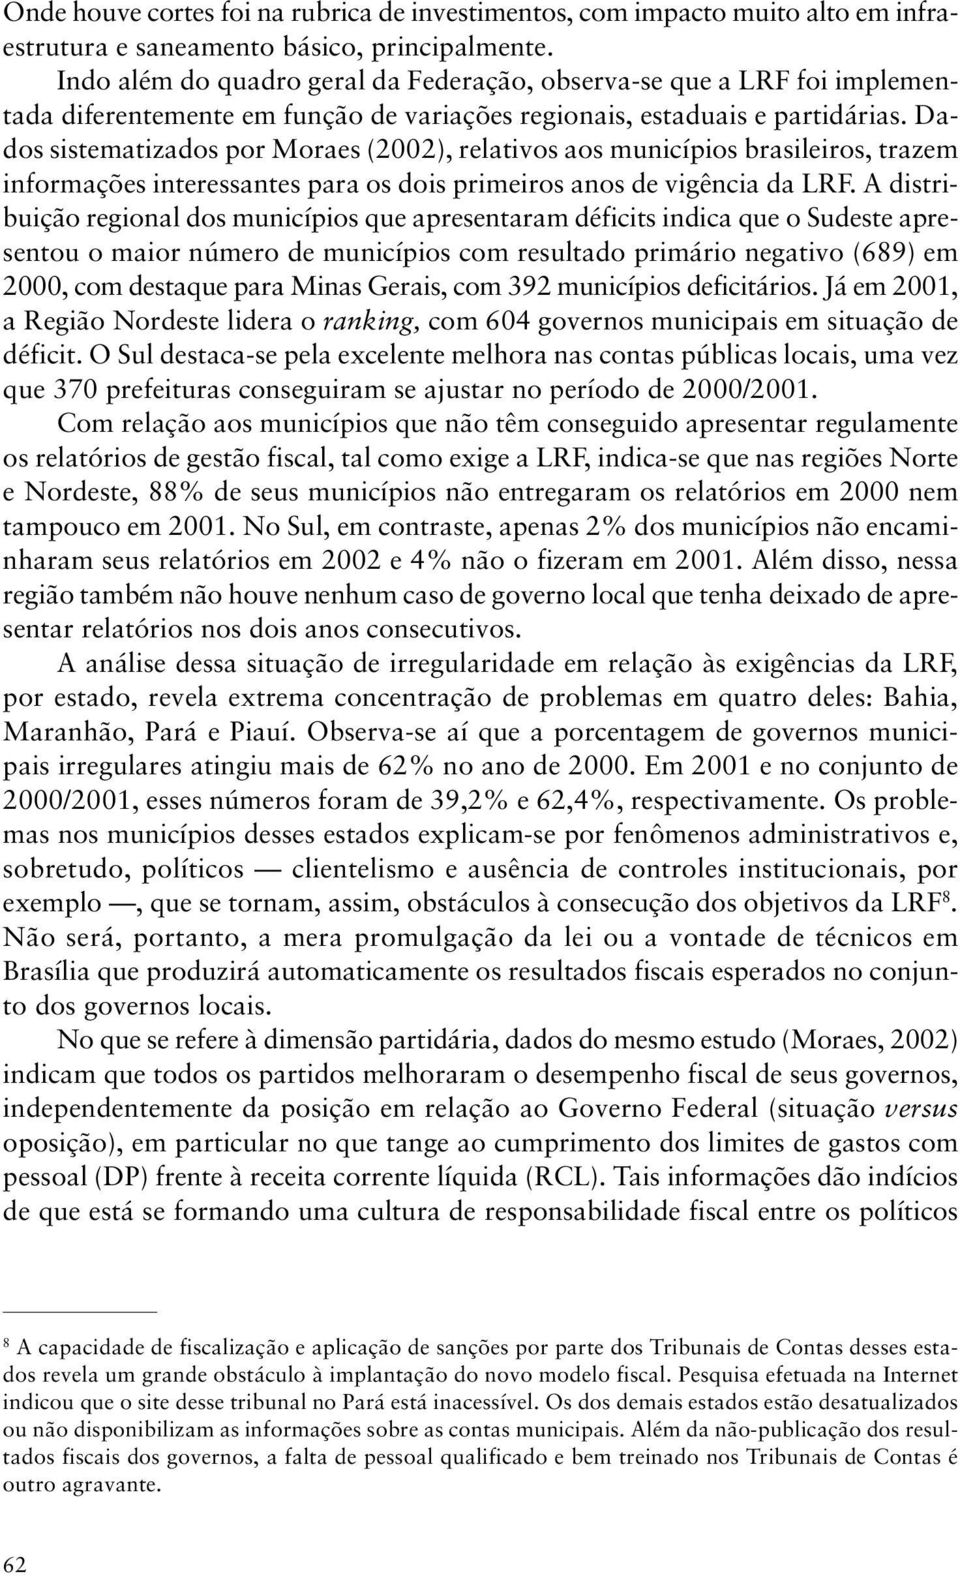 Dados sistematizados por Moraes (2002), relativos aos municípios brasileiros, trazem informações interessantes para os dois primeiros anos de vigência da LRF.